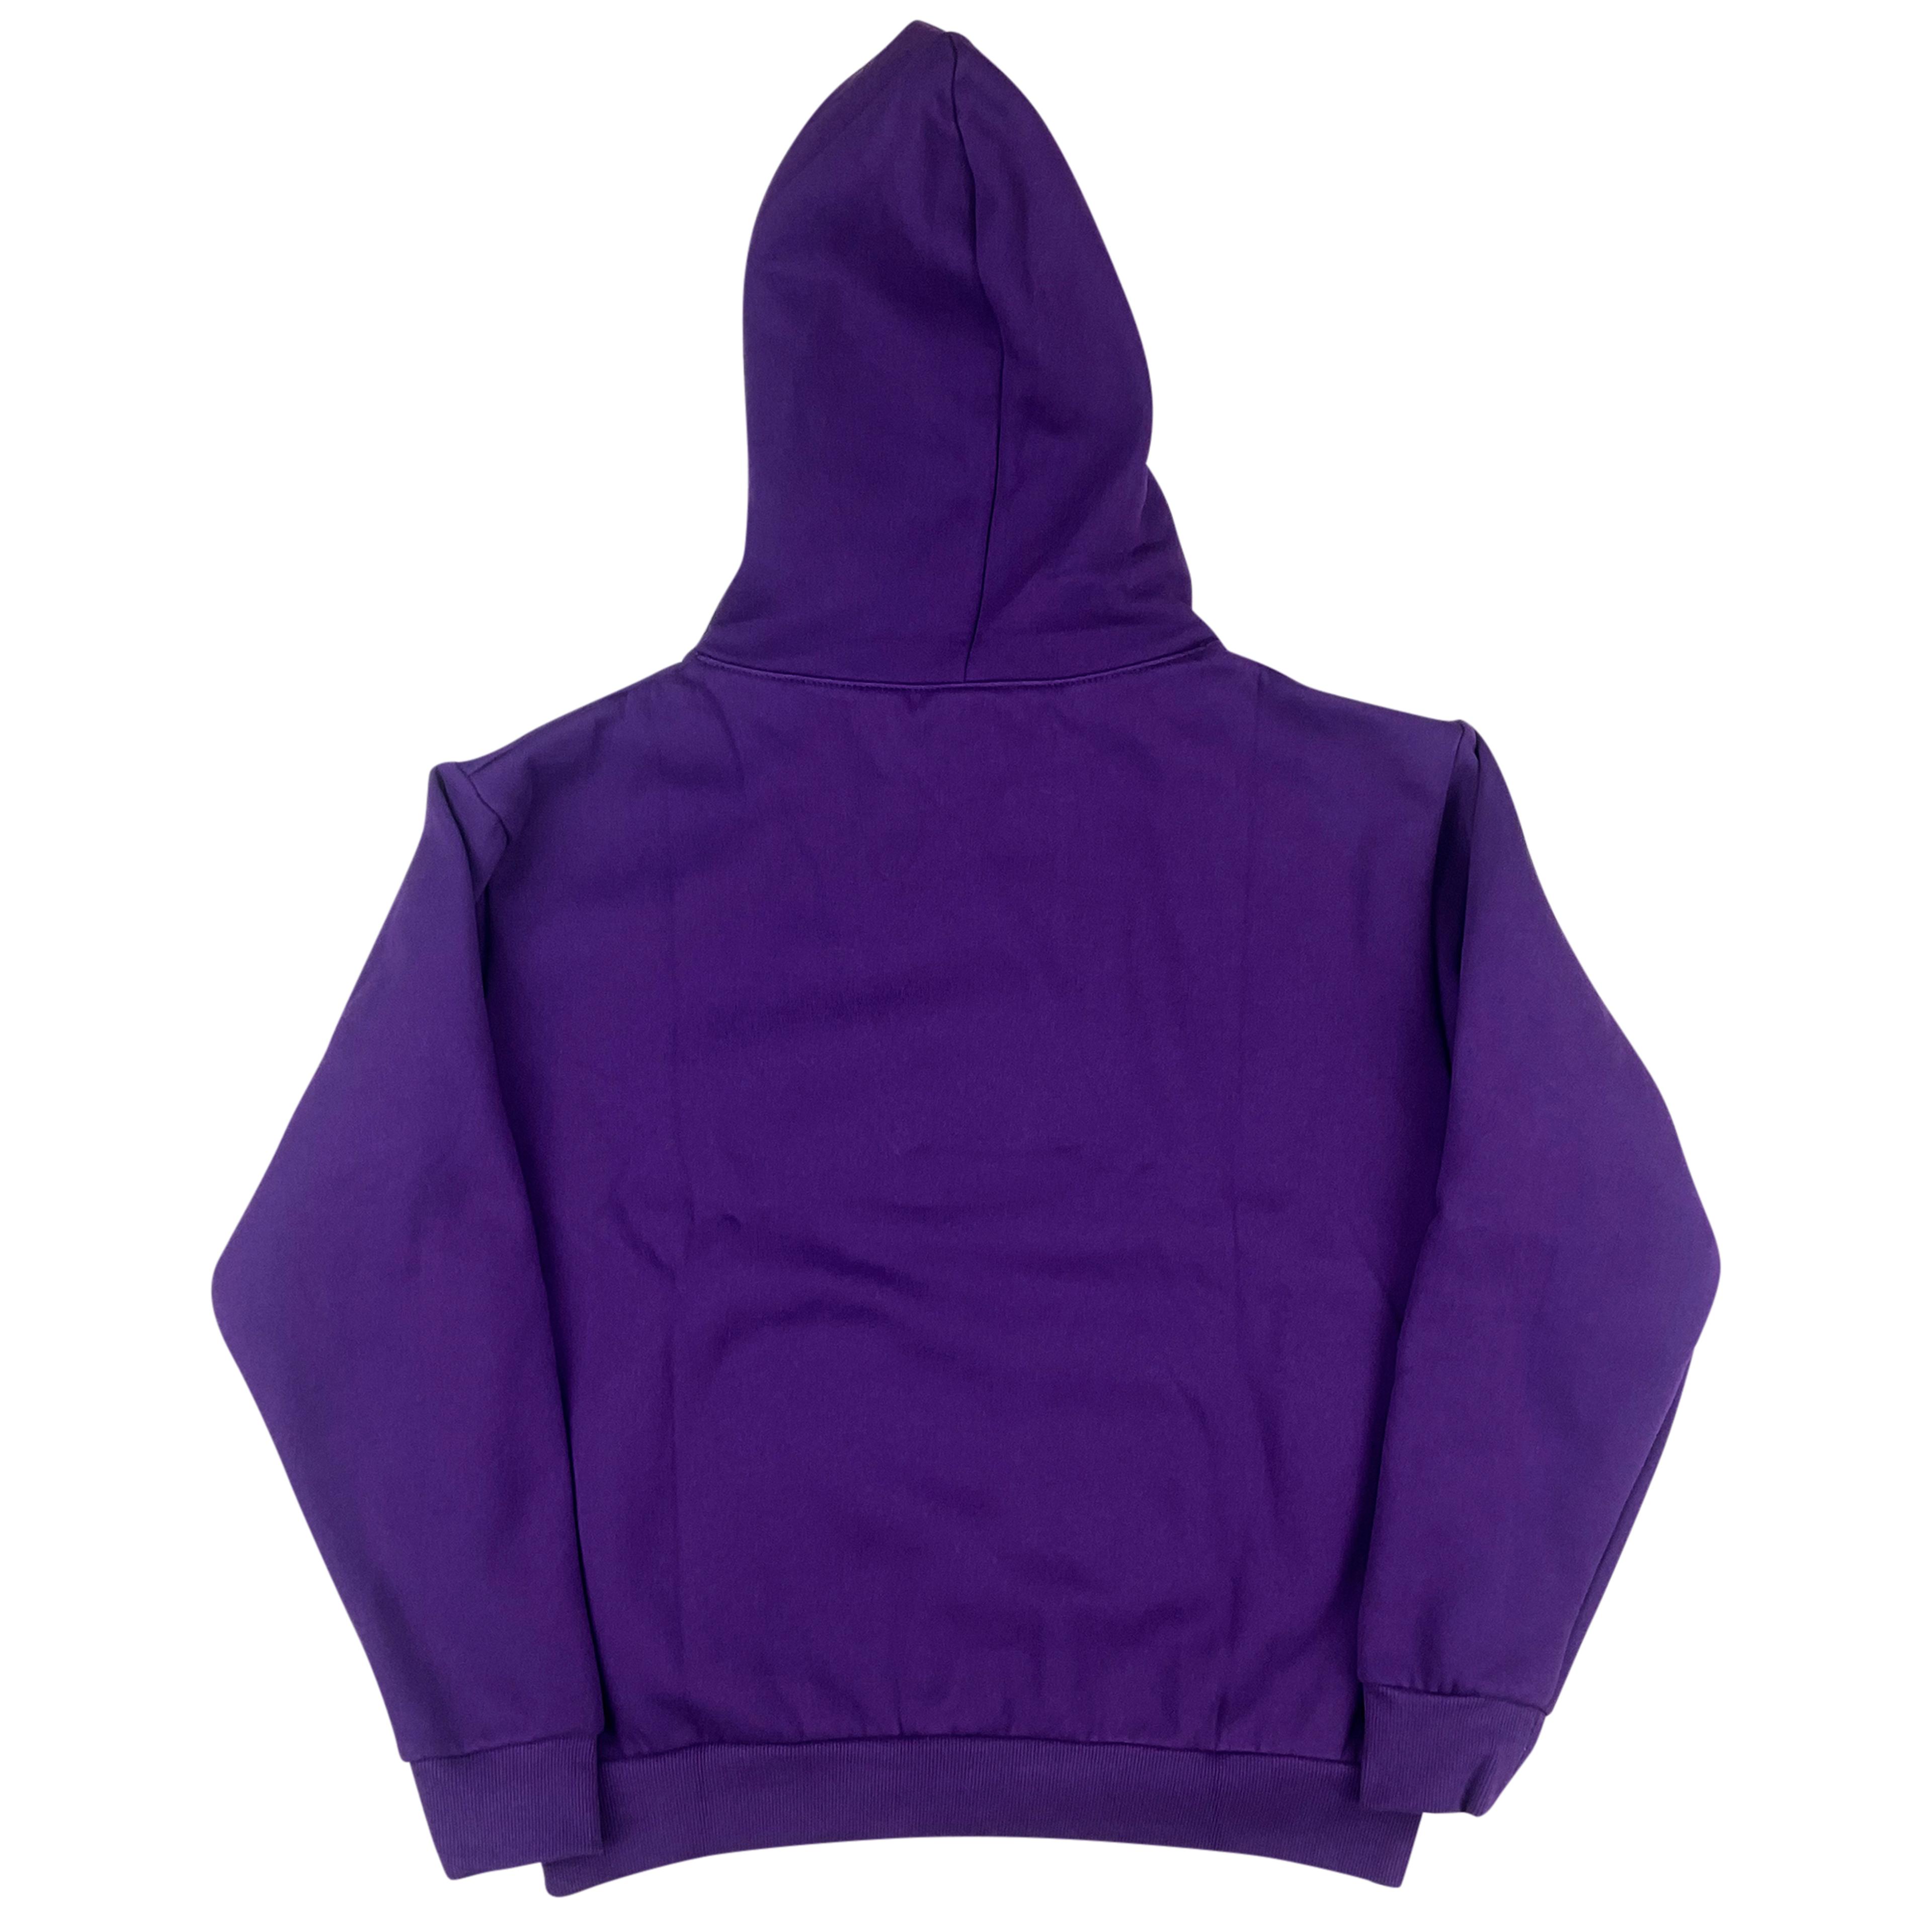 Alternate View 1 of Sp5der Web Hoodie Sweatshirt Purple | Spider Worldwide